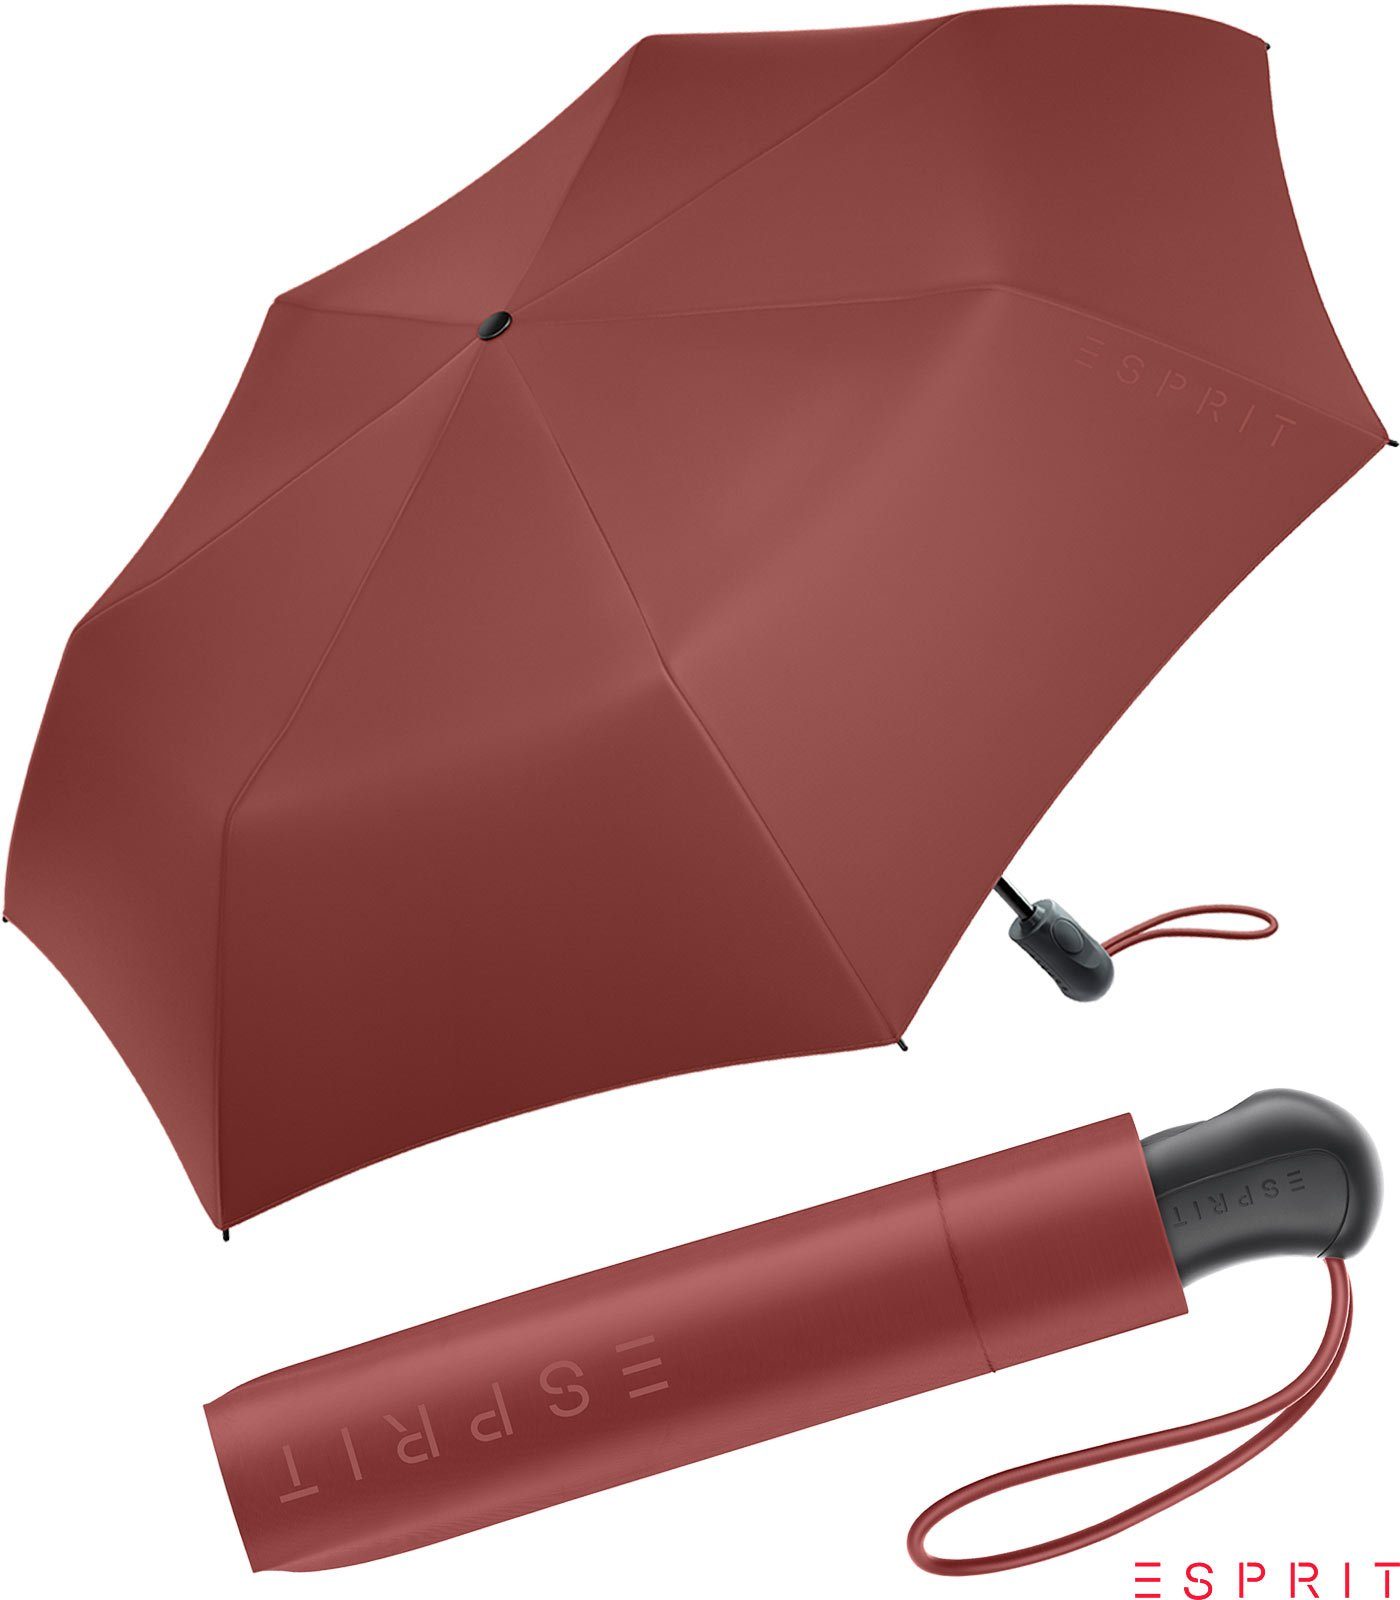 Esprit Taschenregenschirm Damen Easymatic Light Auf-Zu Automatik HW 2022 - russet brown, stabil, praktisch, in den neuen Trendfarben braun